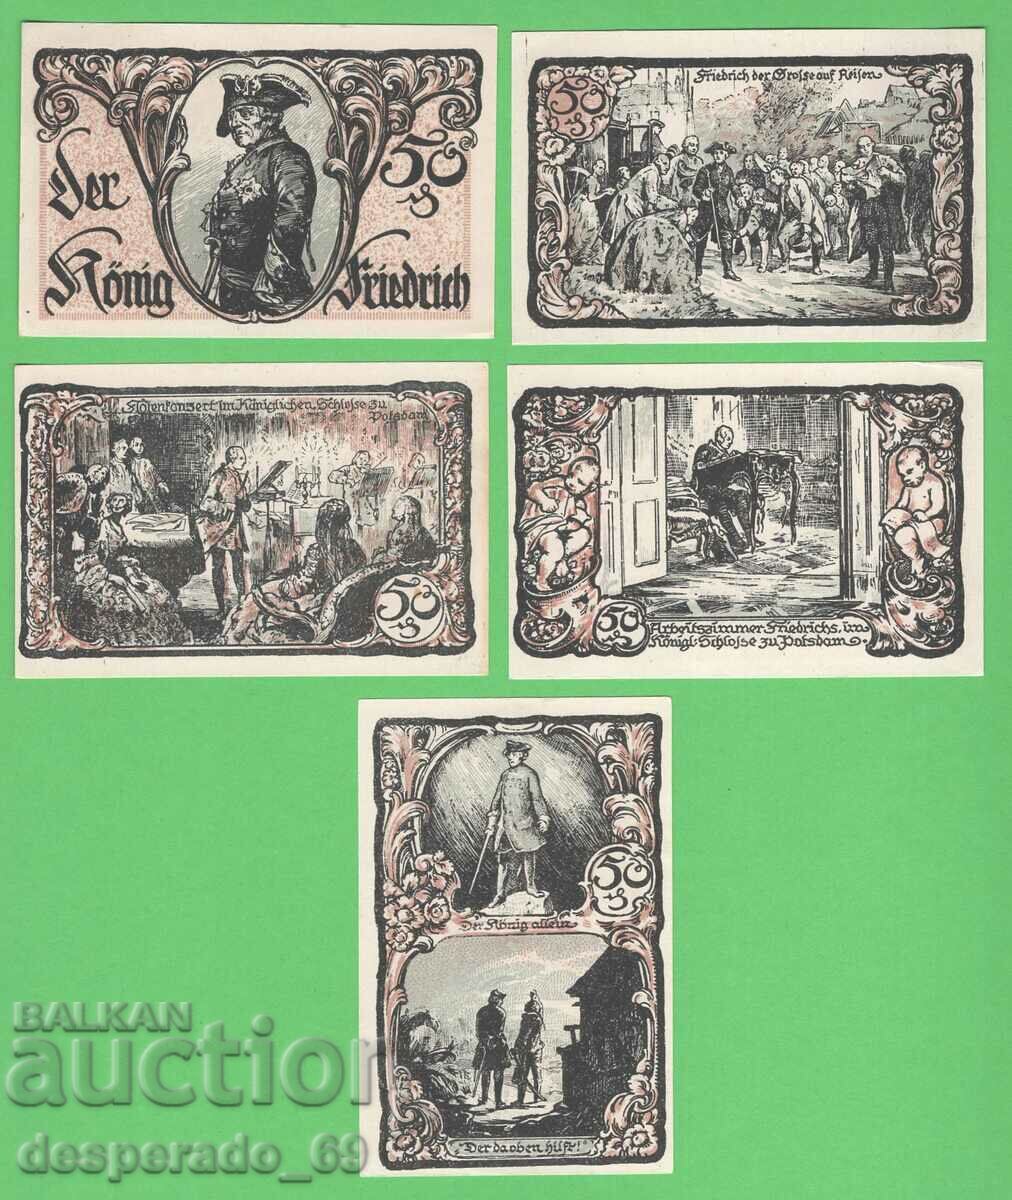 (¯`'•.¸NOTGELD (city Friedrichsbrunn) 1921 UNC -5 pcs. banknotes